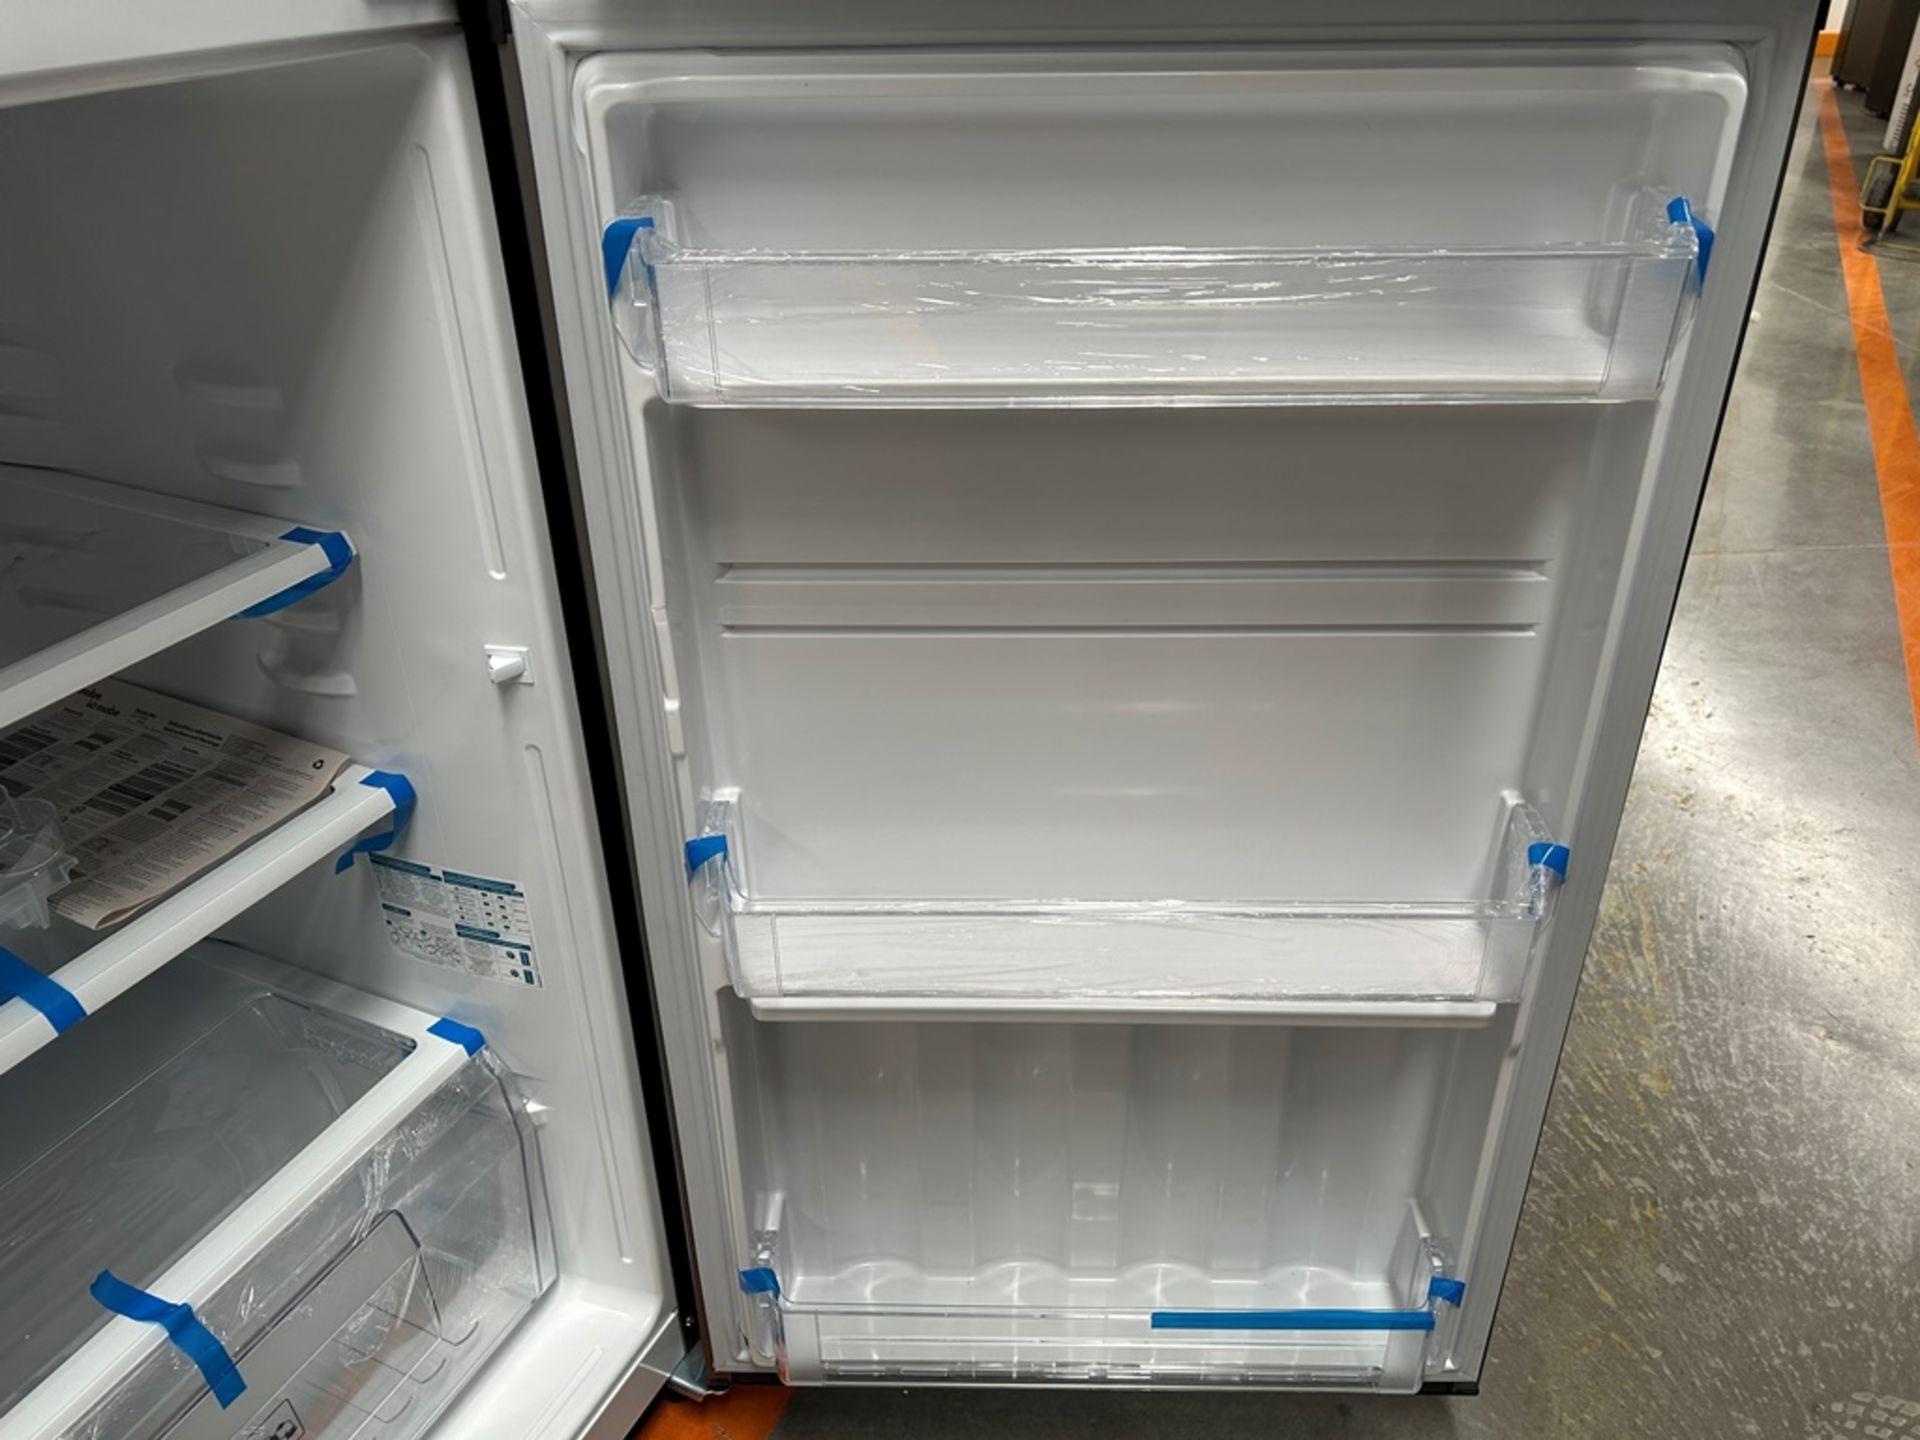 Lote de 2 refrigeradores contiene: 1 refrigerador Marca MABE, Modelo RME360PVMRM, Serie 01988, Colo - Image 8 of 18